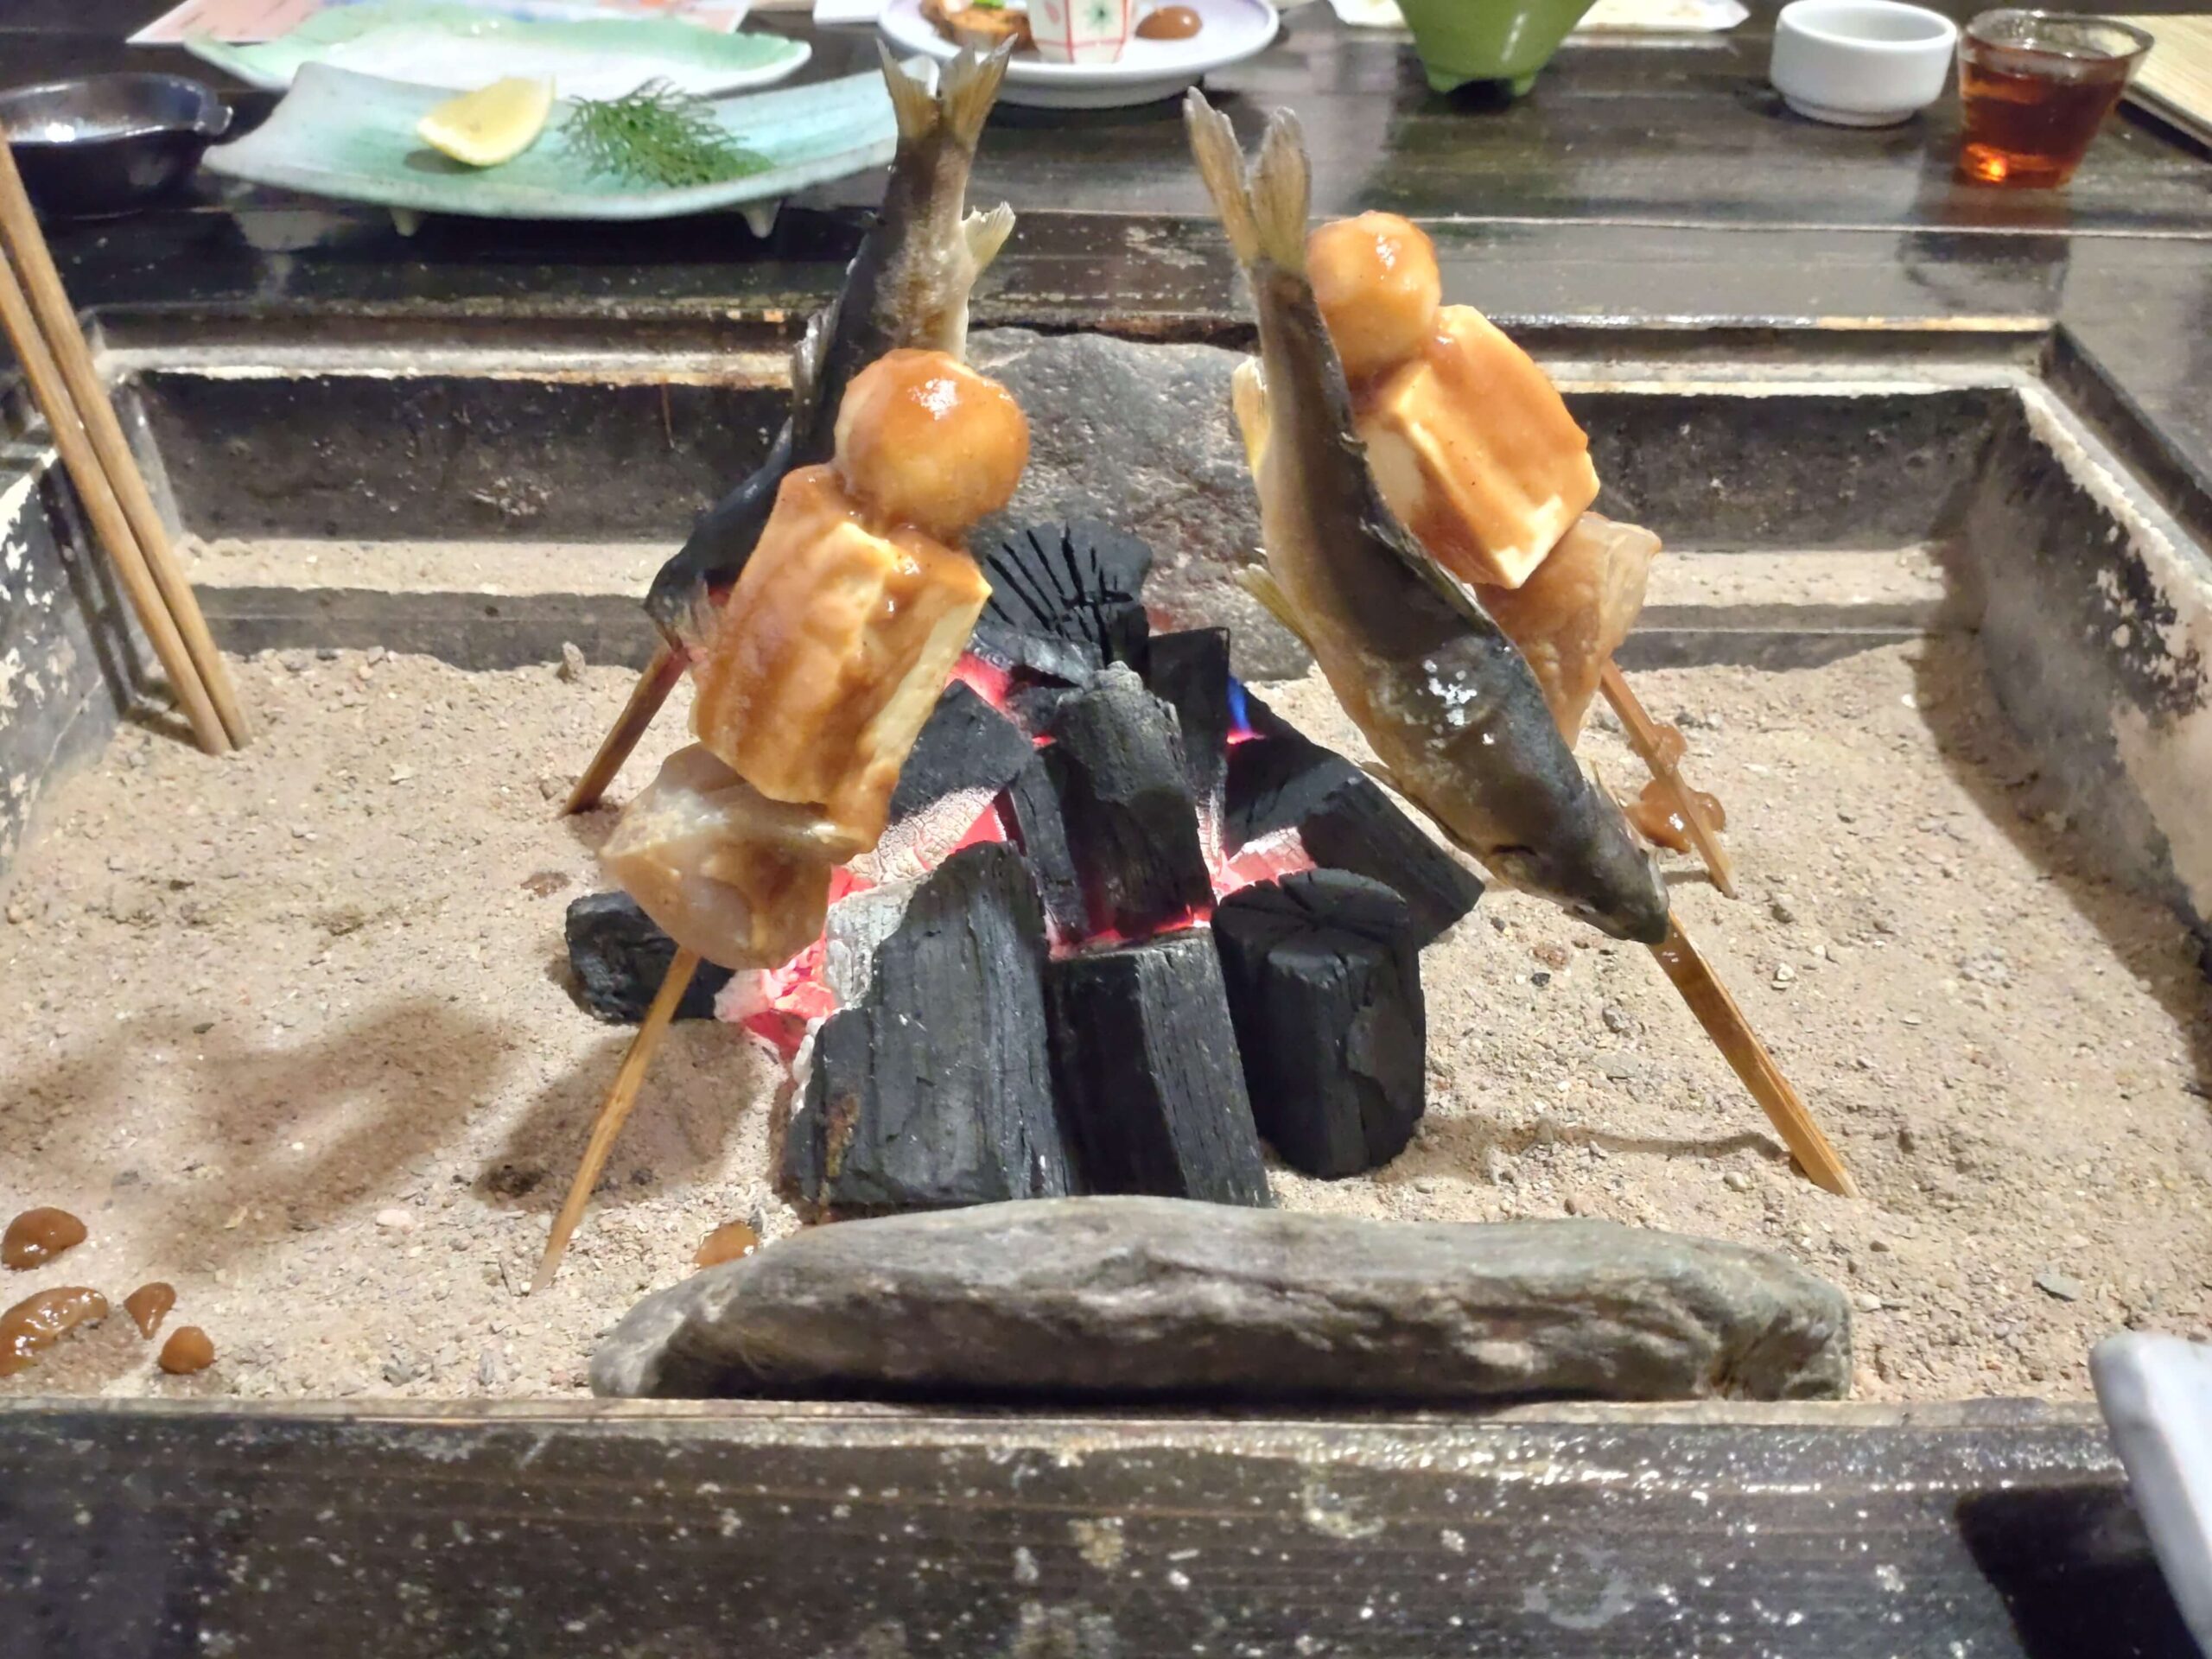 祖谷美人の囲炉裏で郷土料理